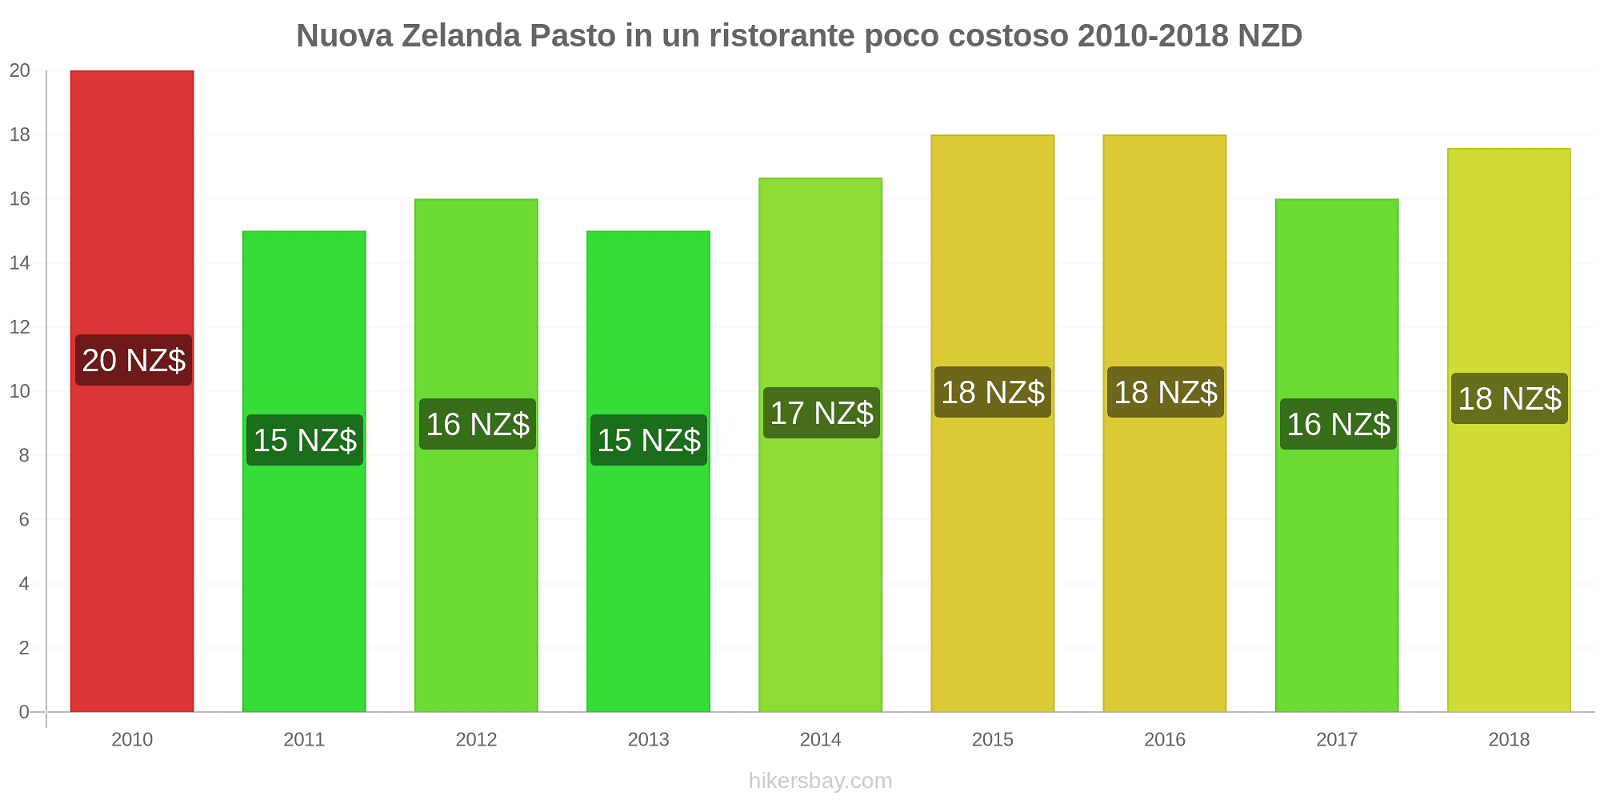 Nuova Zelanda cambi di prezzo Pasto in un ristorante economico hikersbay.com